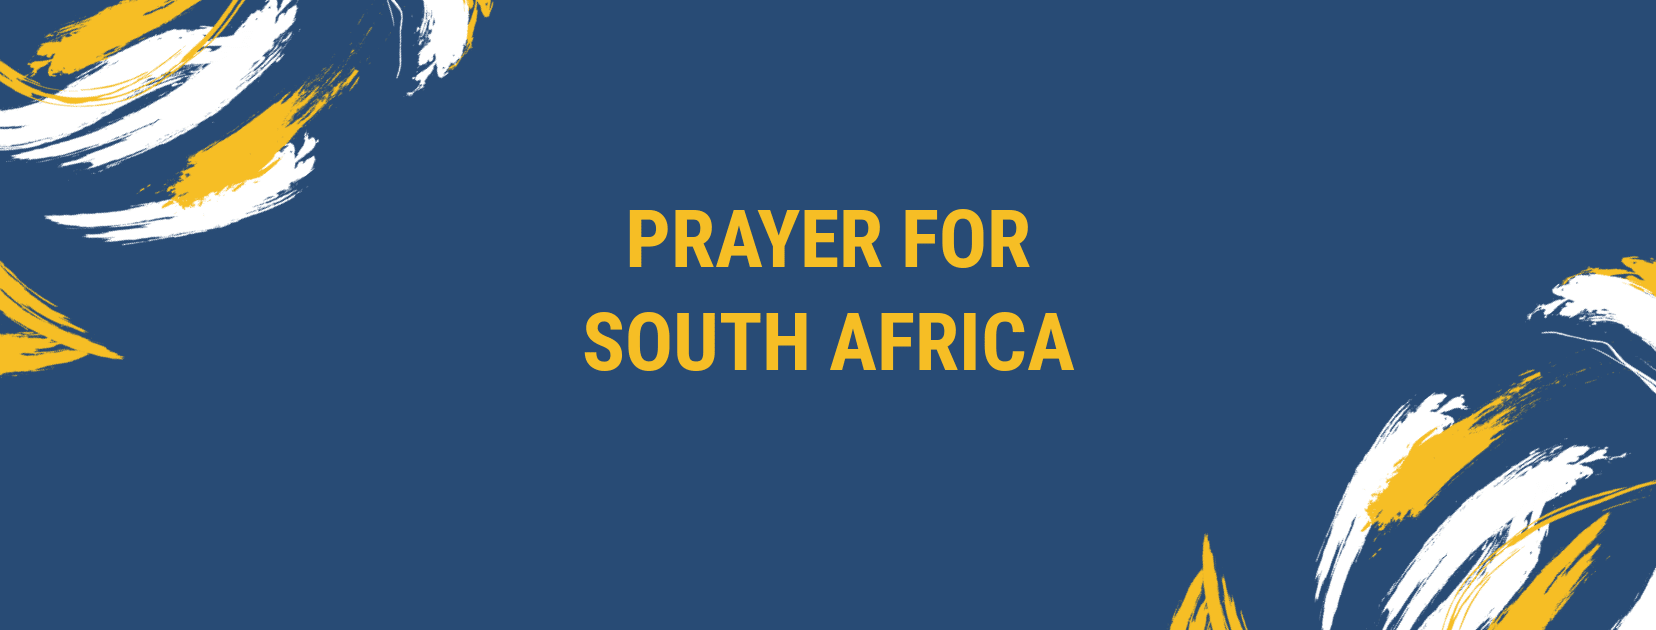 Cənubi Afrika üçün dua